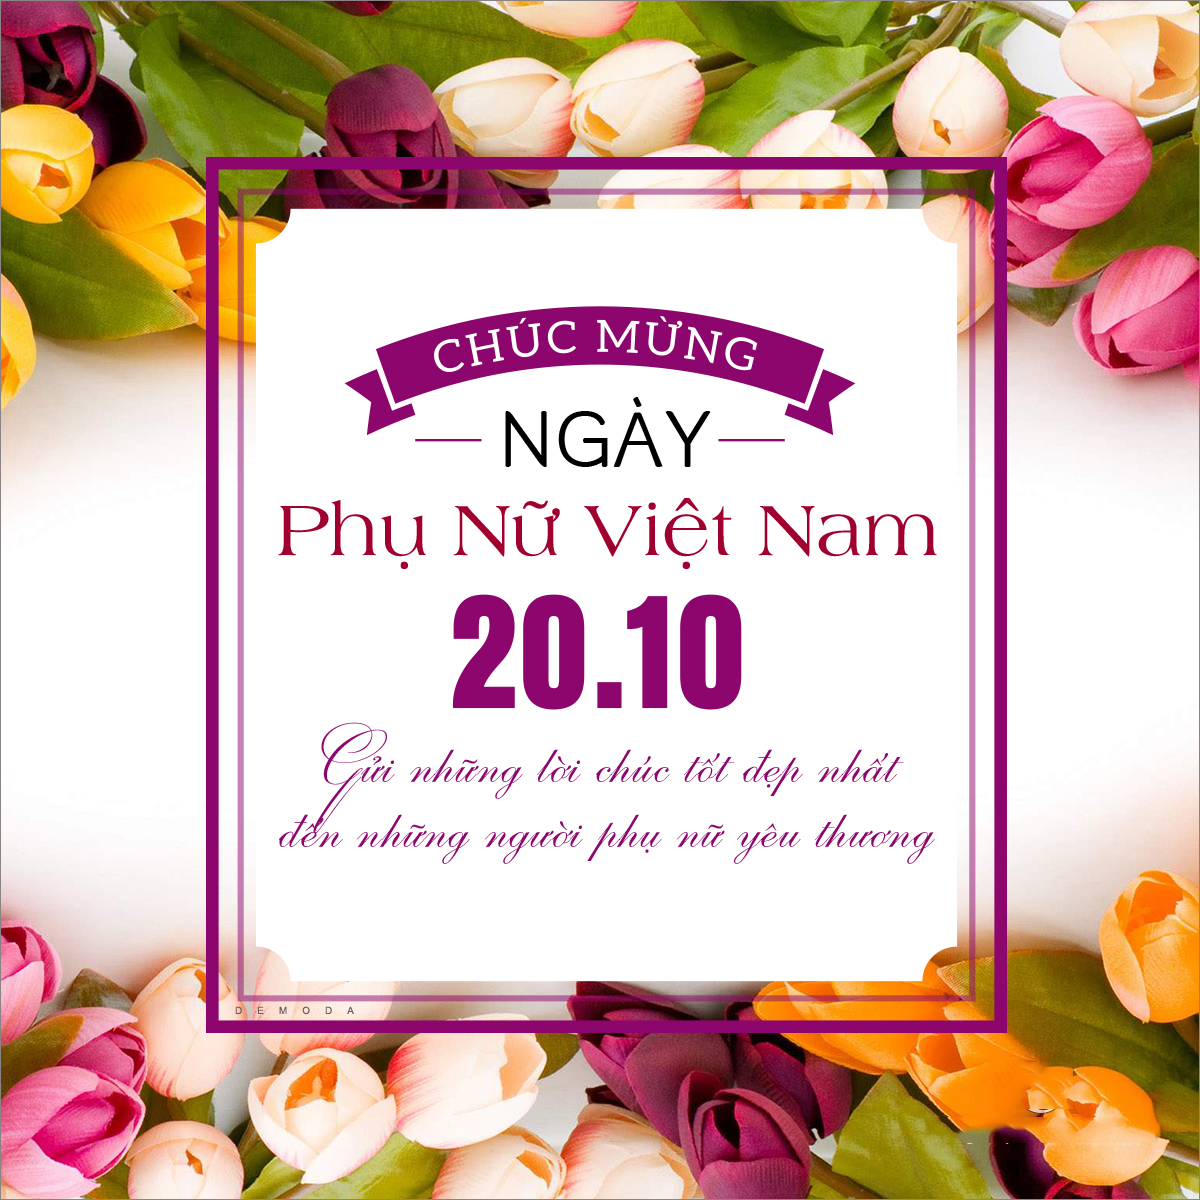 Ngày Phụ Nữ Việt Nam là dịp để chúng ta tôn vinh những bậc thầy trên mỗi gia đình và trong cộng đồng. Hãy dành tặng cho chị em phụ nữ những lời cảm ơn và những tấm thiệp ý nghĩa, để họ cảm nhận được giá trị của mình. Hãy cùng ngắm những hình ảnh đẹp và cảm nhận sức mạnh và sự kiên cường của chị em trong cuộc sống.